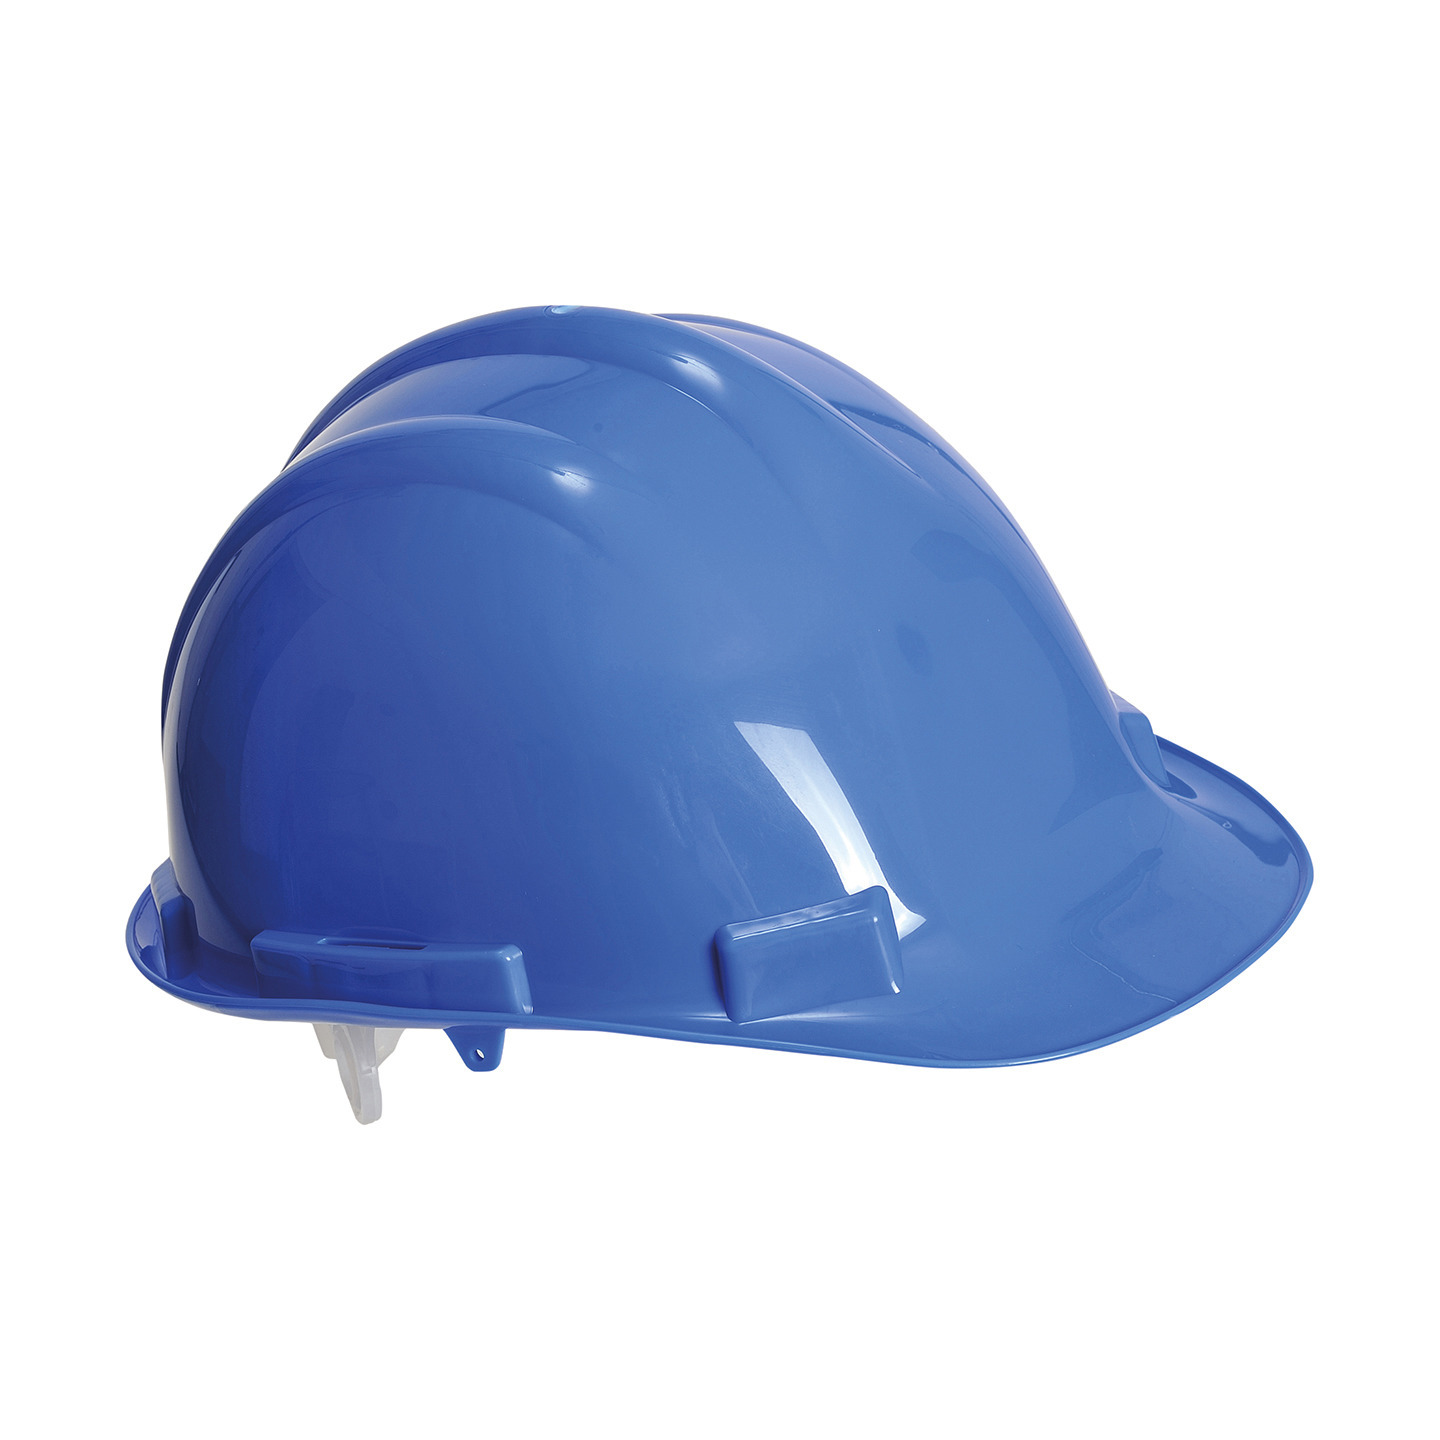 Set van 3x stuks veiligheidshelmen-bouwhelmen hoofdbescherming blauw verstelbaar 55-62 cm